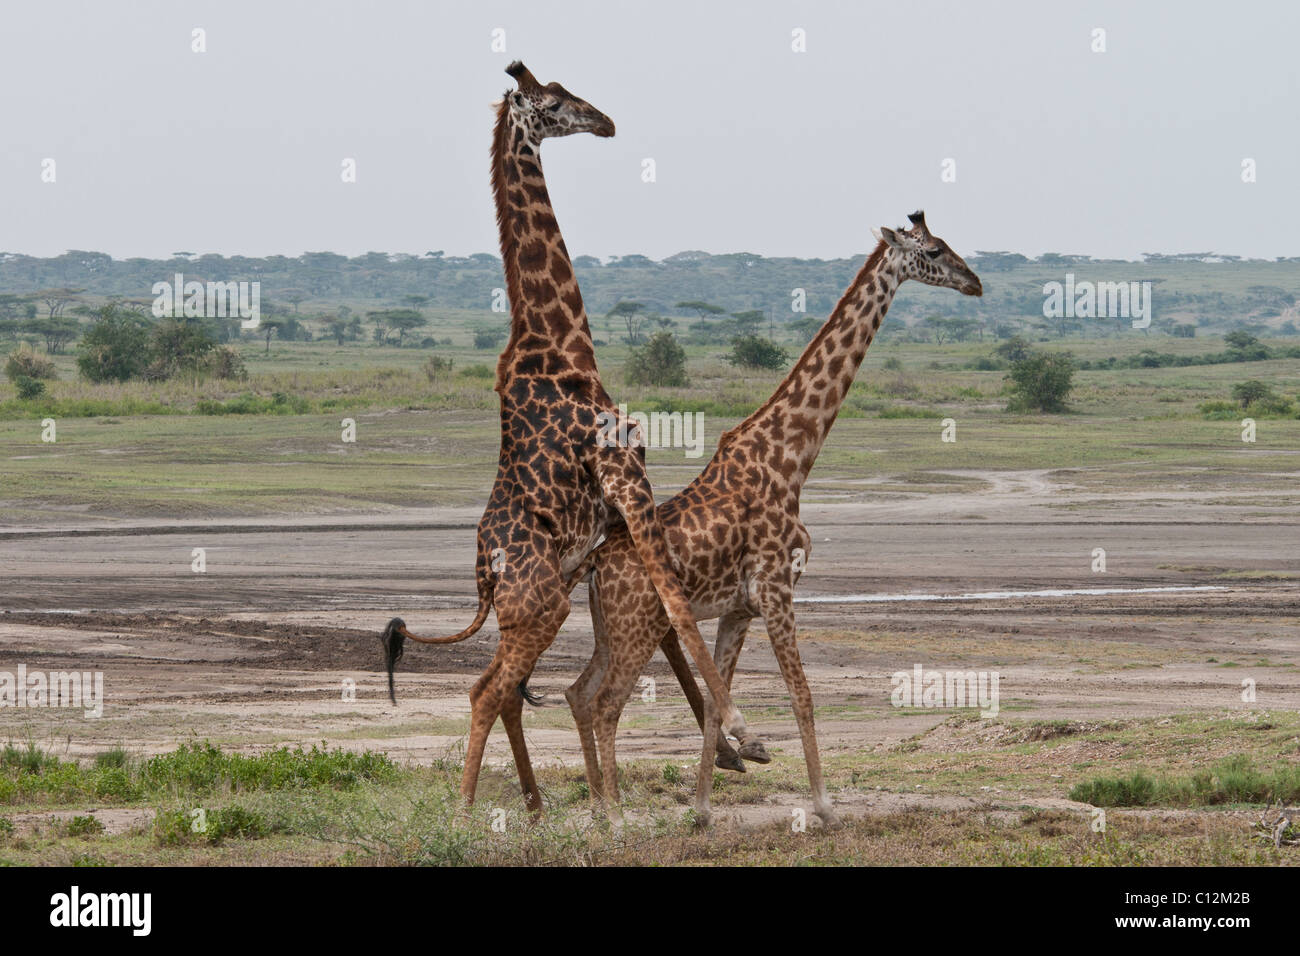 Stock Foto von Giraffen Anzeige Zucht Verhalten. Stockfoto